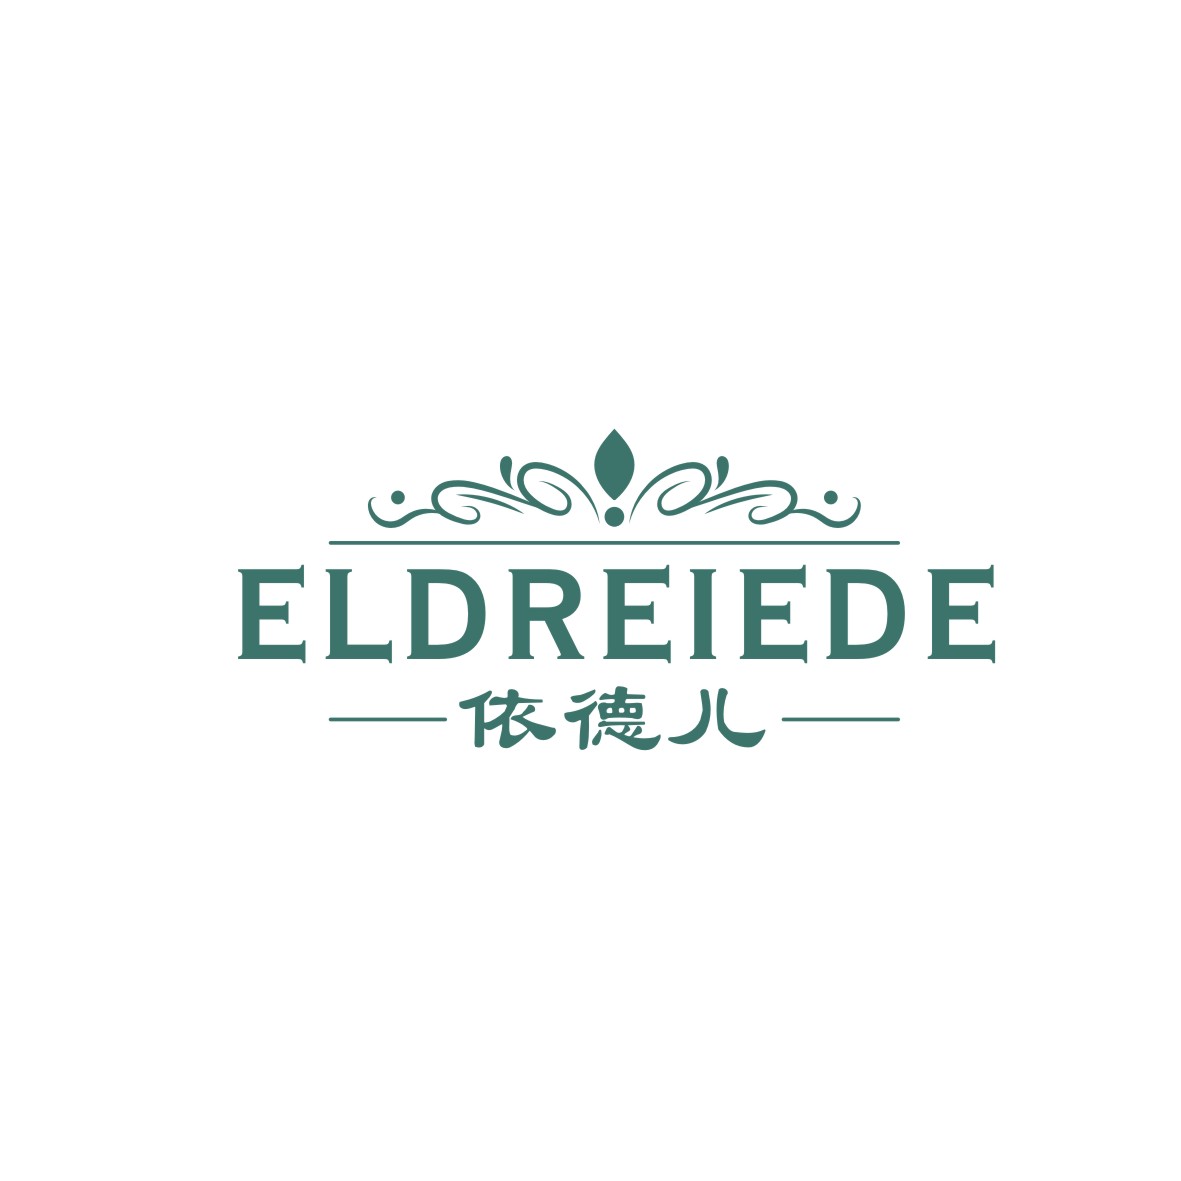 广州品翰文化发展有限公司商标依德儿 ELDREIEDE（18类）商标转让多少钱？